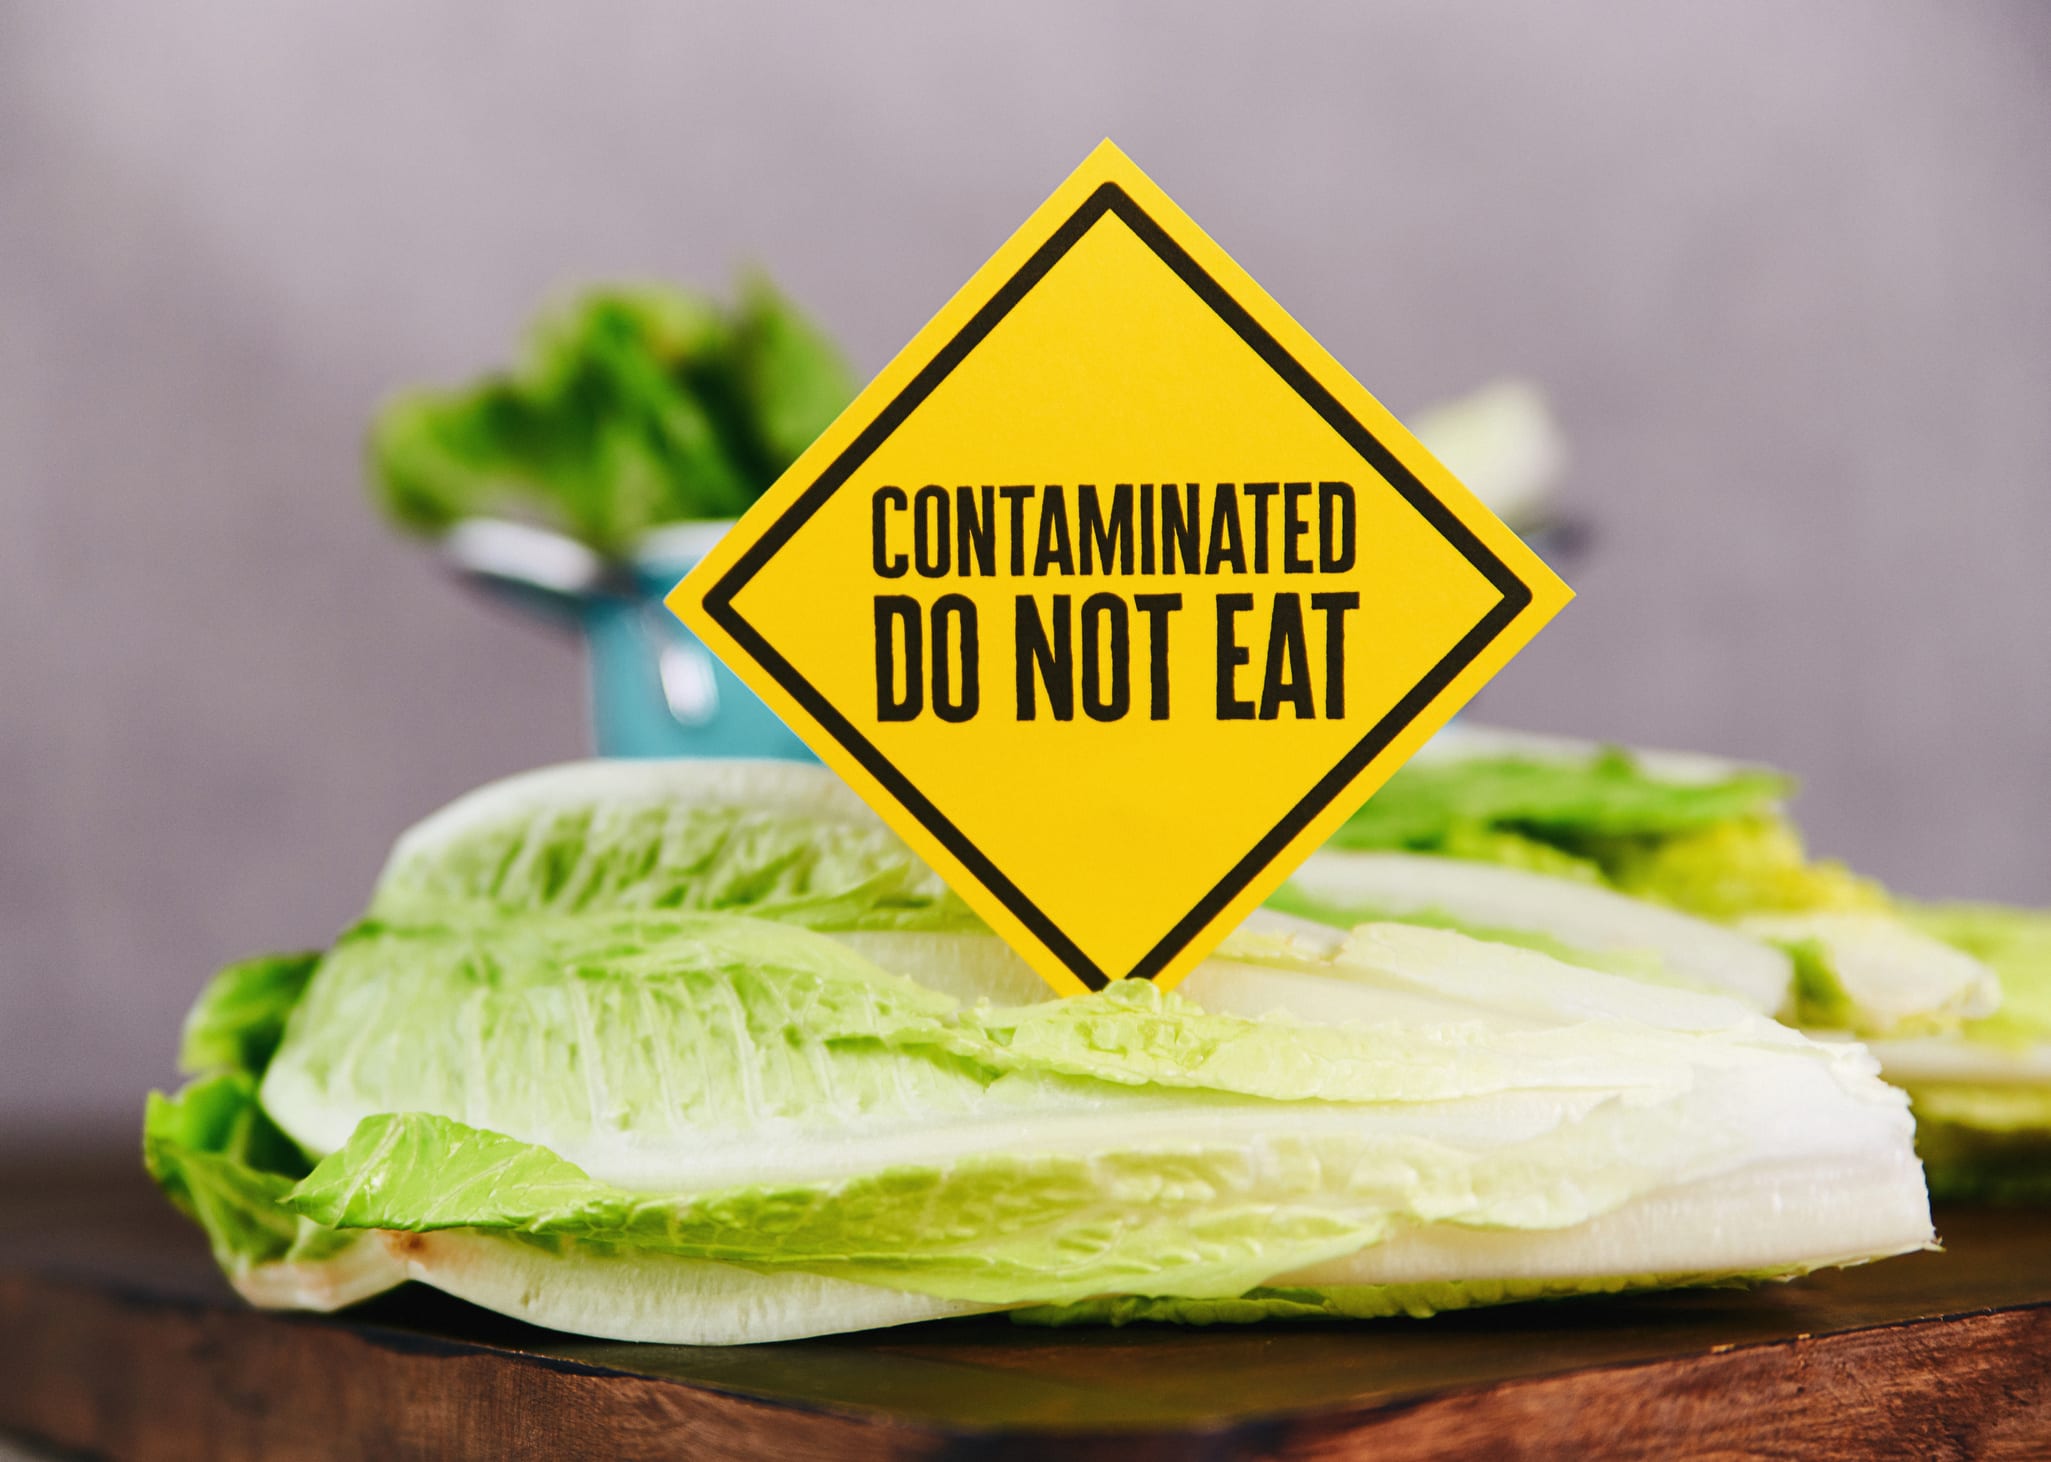 Contaminated food